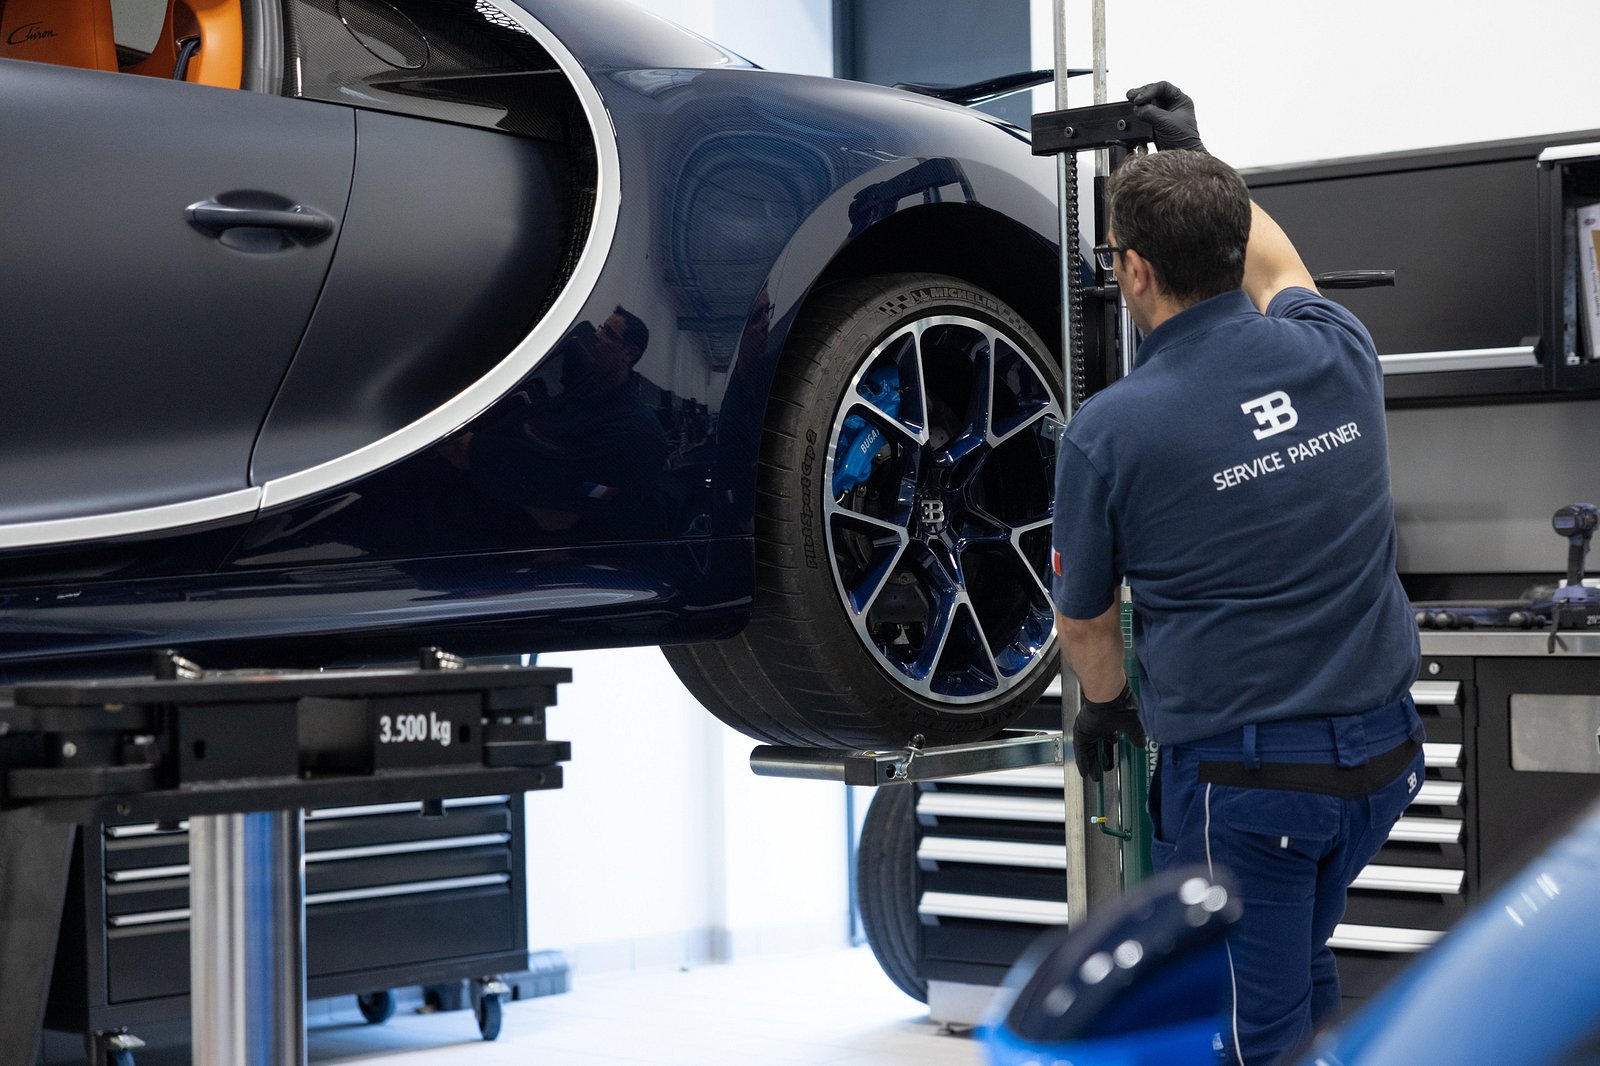 Chỉ có 6 trung tâm dịch vụ trên thế giới nhưng sao chẳng khách hàng nào phàn nàn về chất lượng dịch vụ Bugatti? - Ảnh 2.